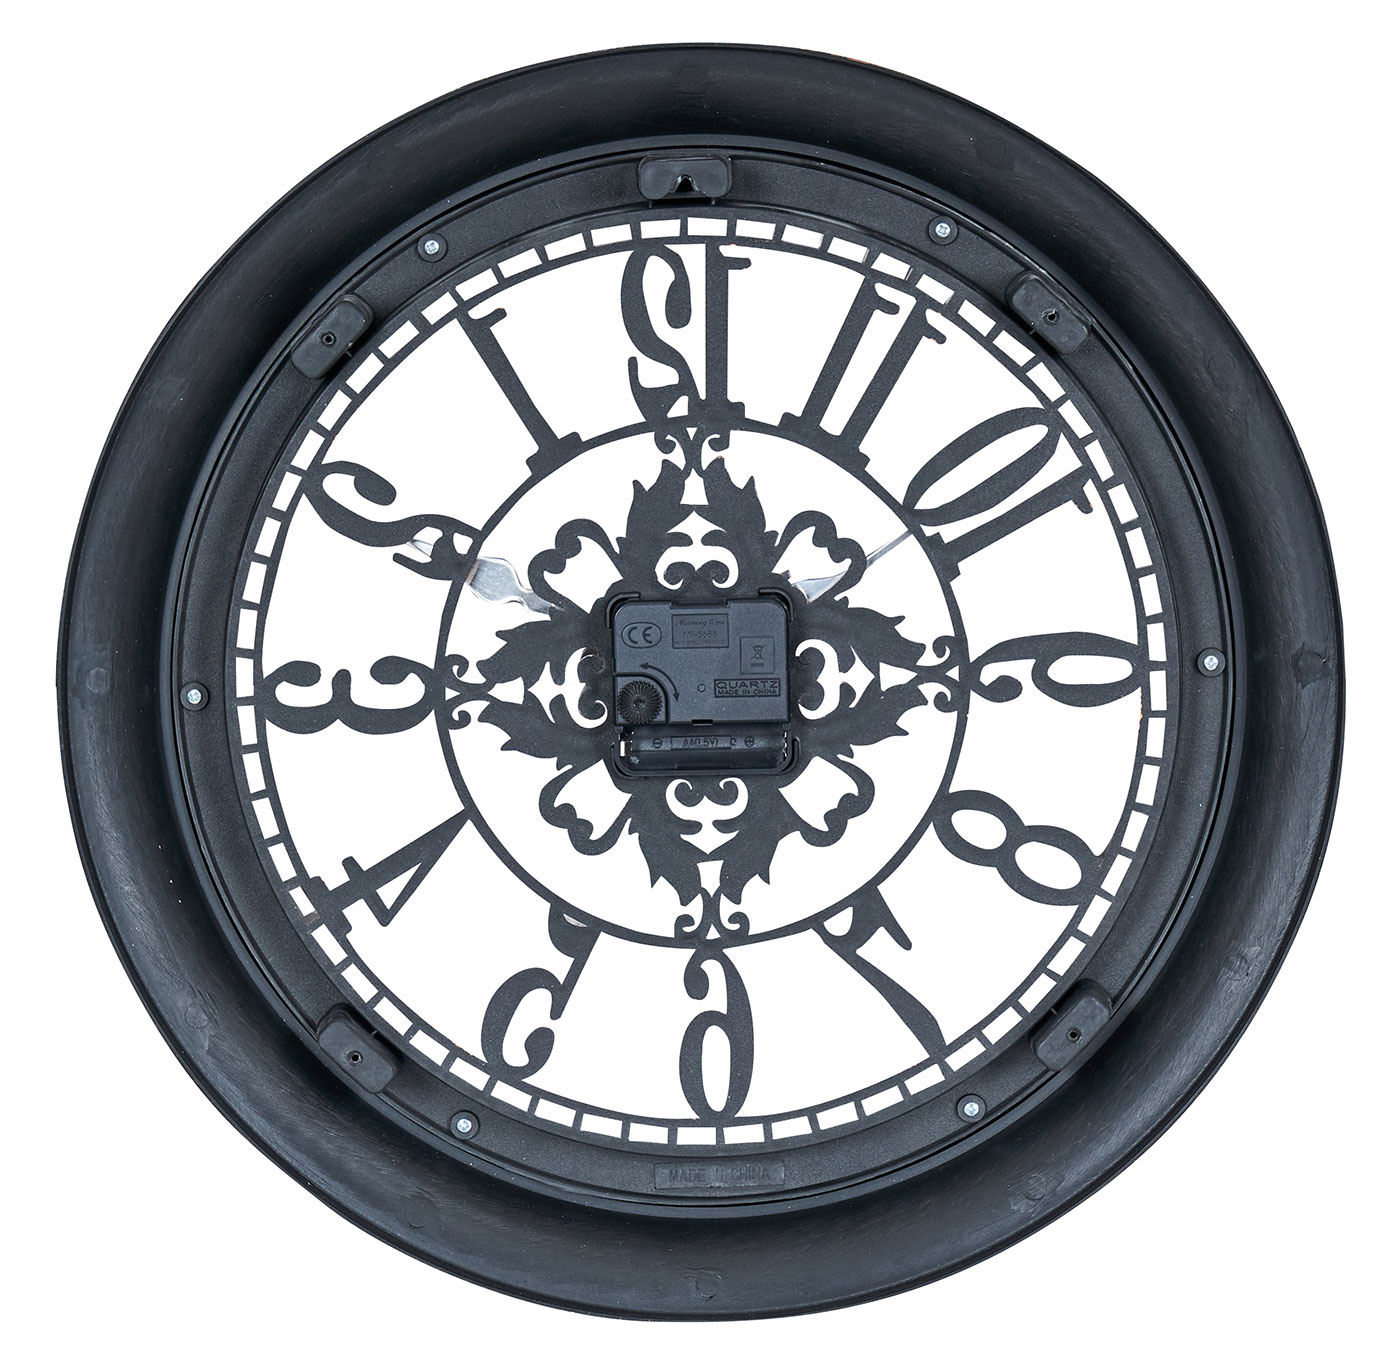 Wanduhr 40x40cm Ornamente Schwarz Kupfer Shabby Chic Vintage Uhr Deko Industrial